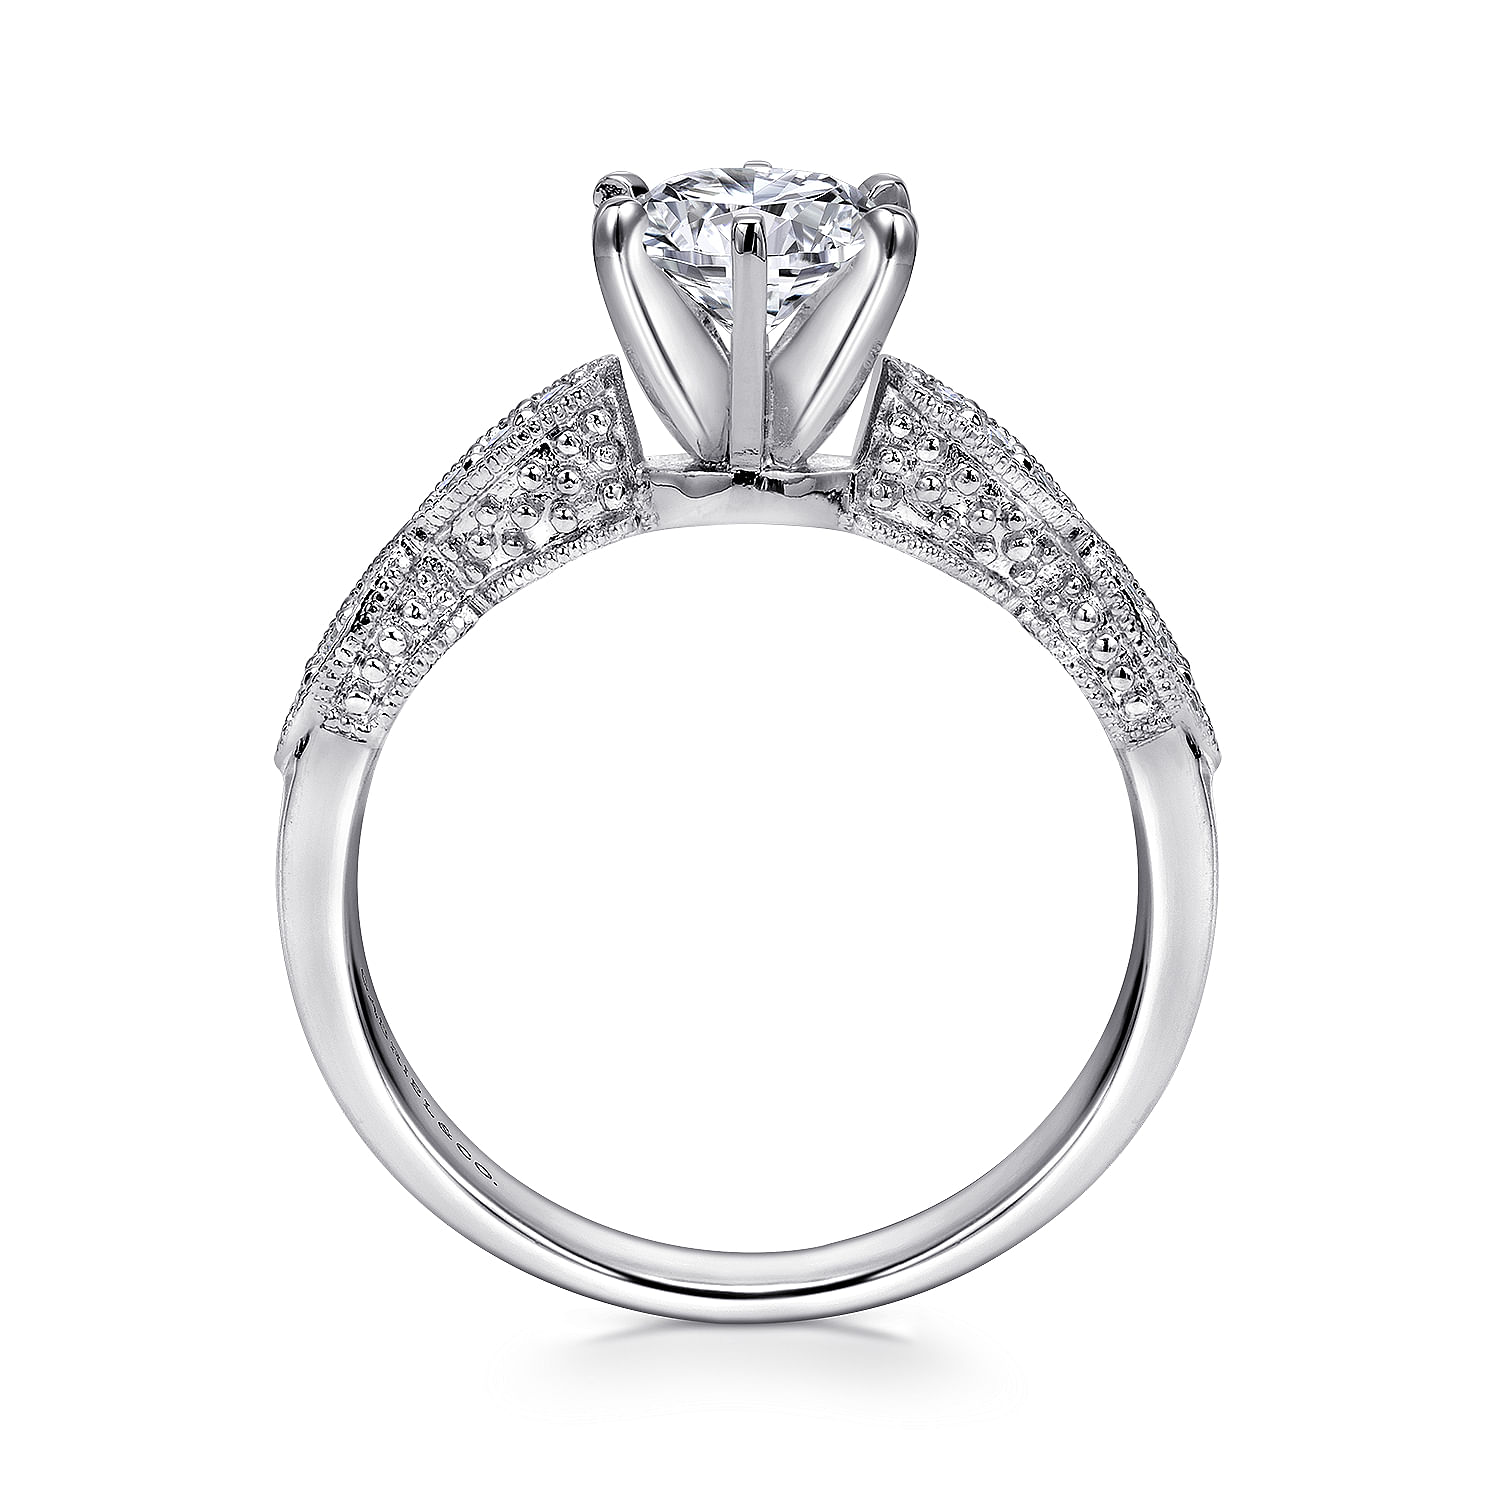 Clara - 14K White Gold Round Diamond Engagement Ring - 0.09 ct - Shot 2